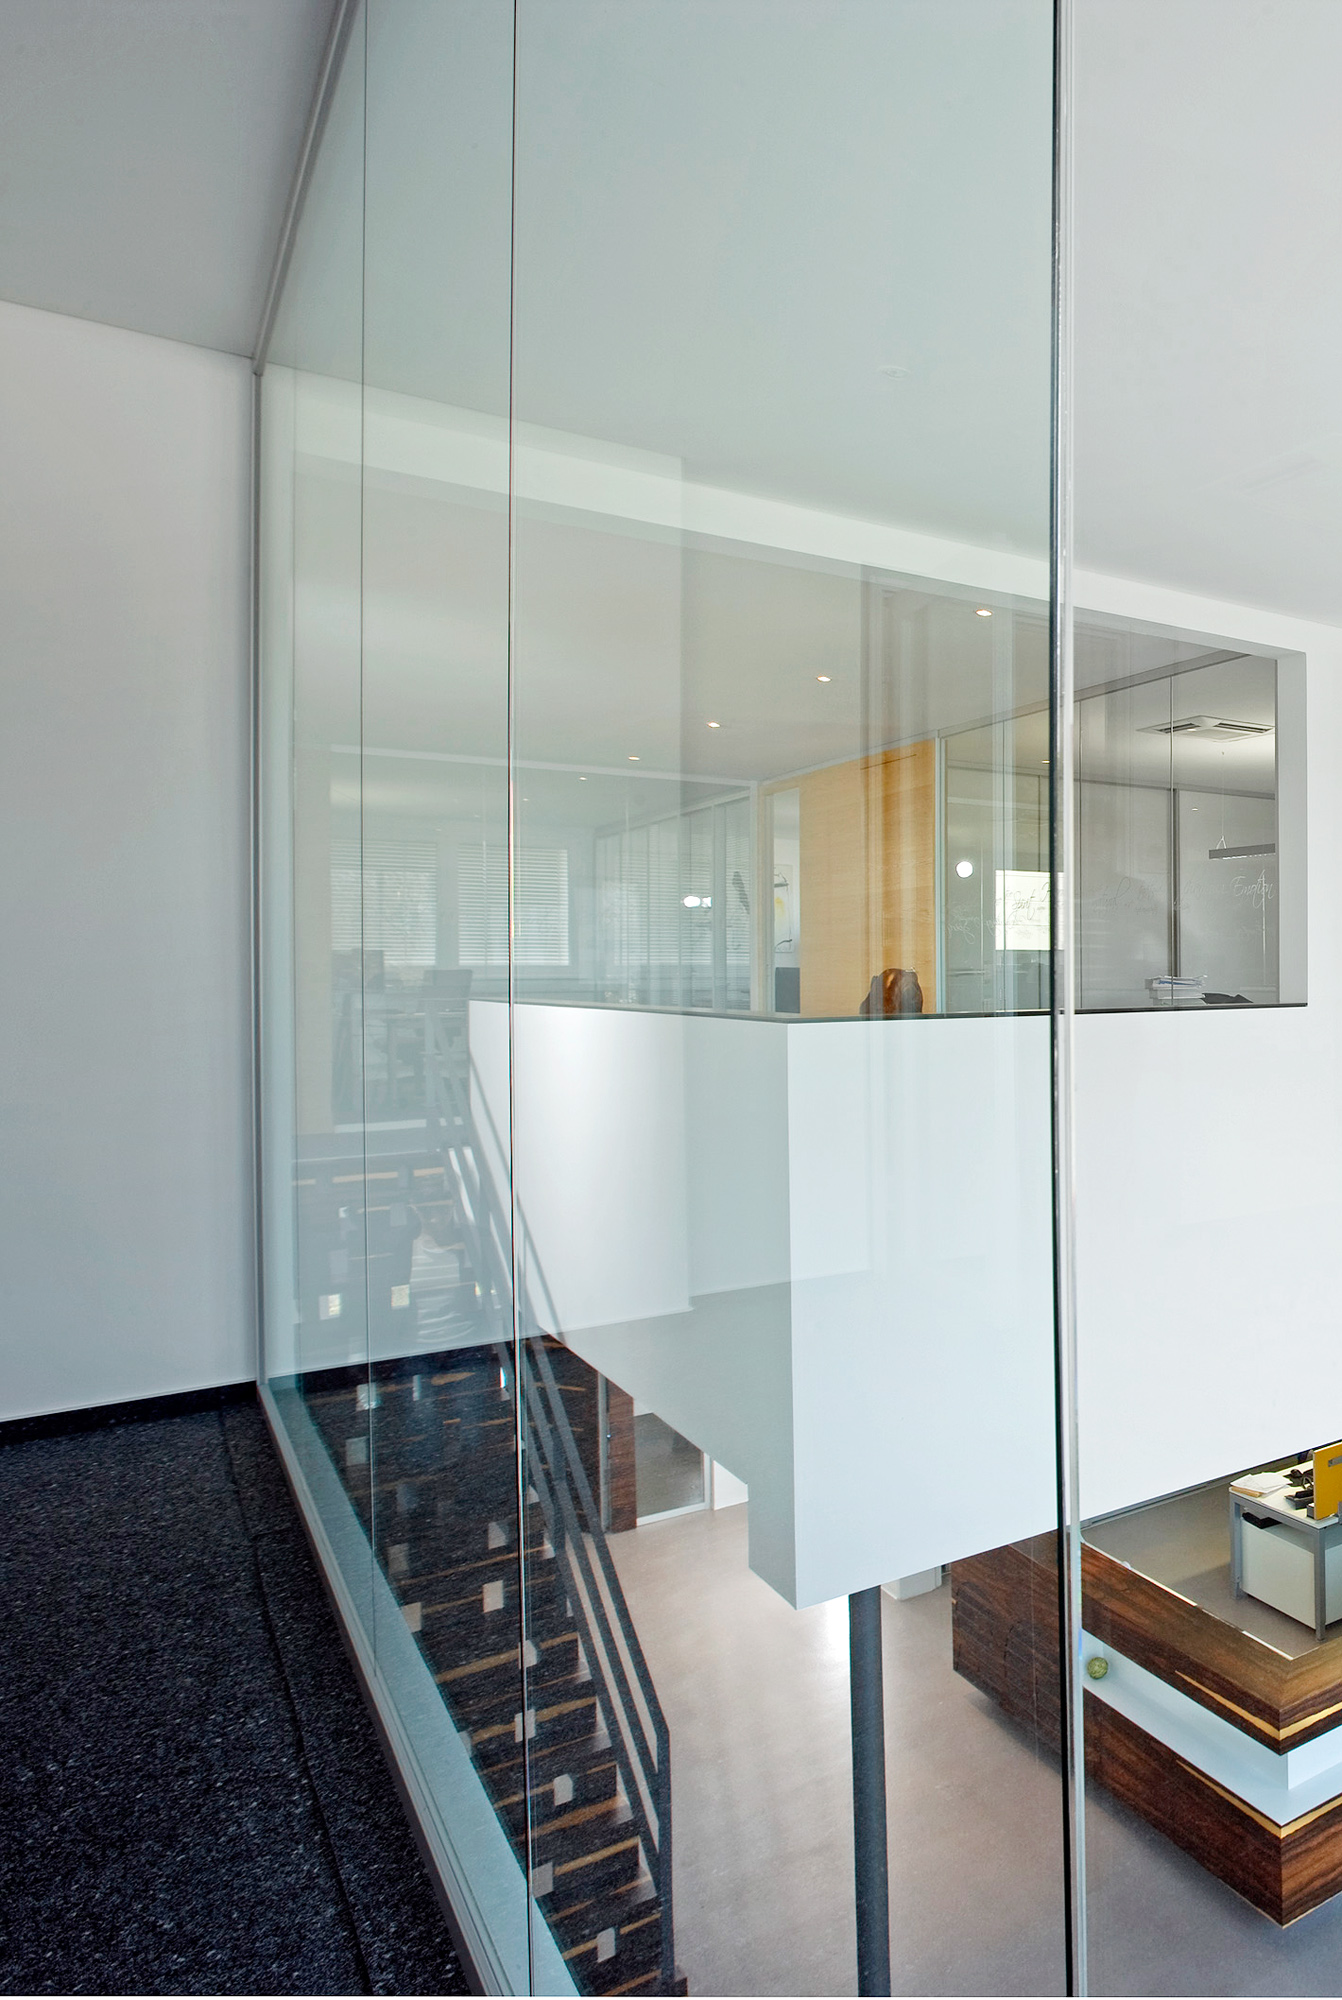 Mit fecoplan können Wandhöhen bis zu 3,50 Meter als absturzsichernder Glas-Raumabschluss ausgeführt werden.